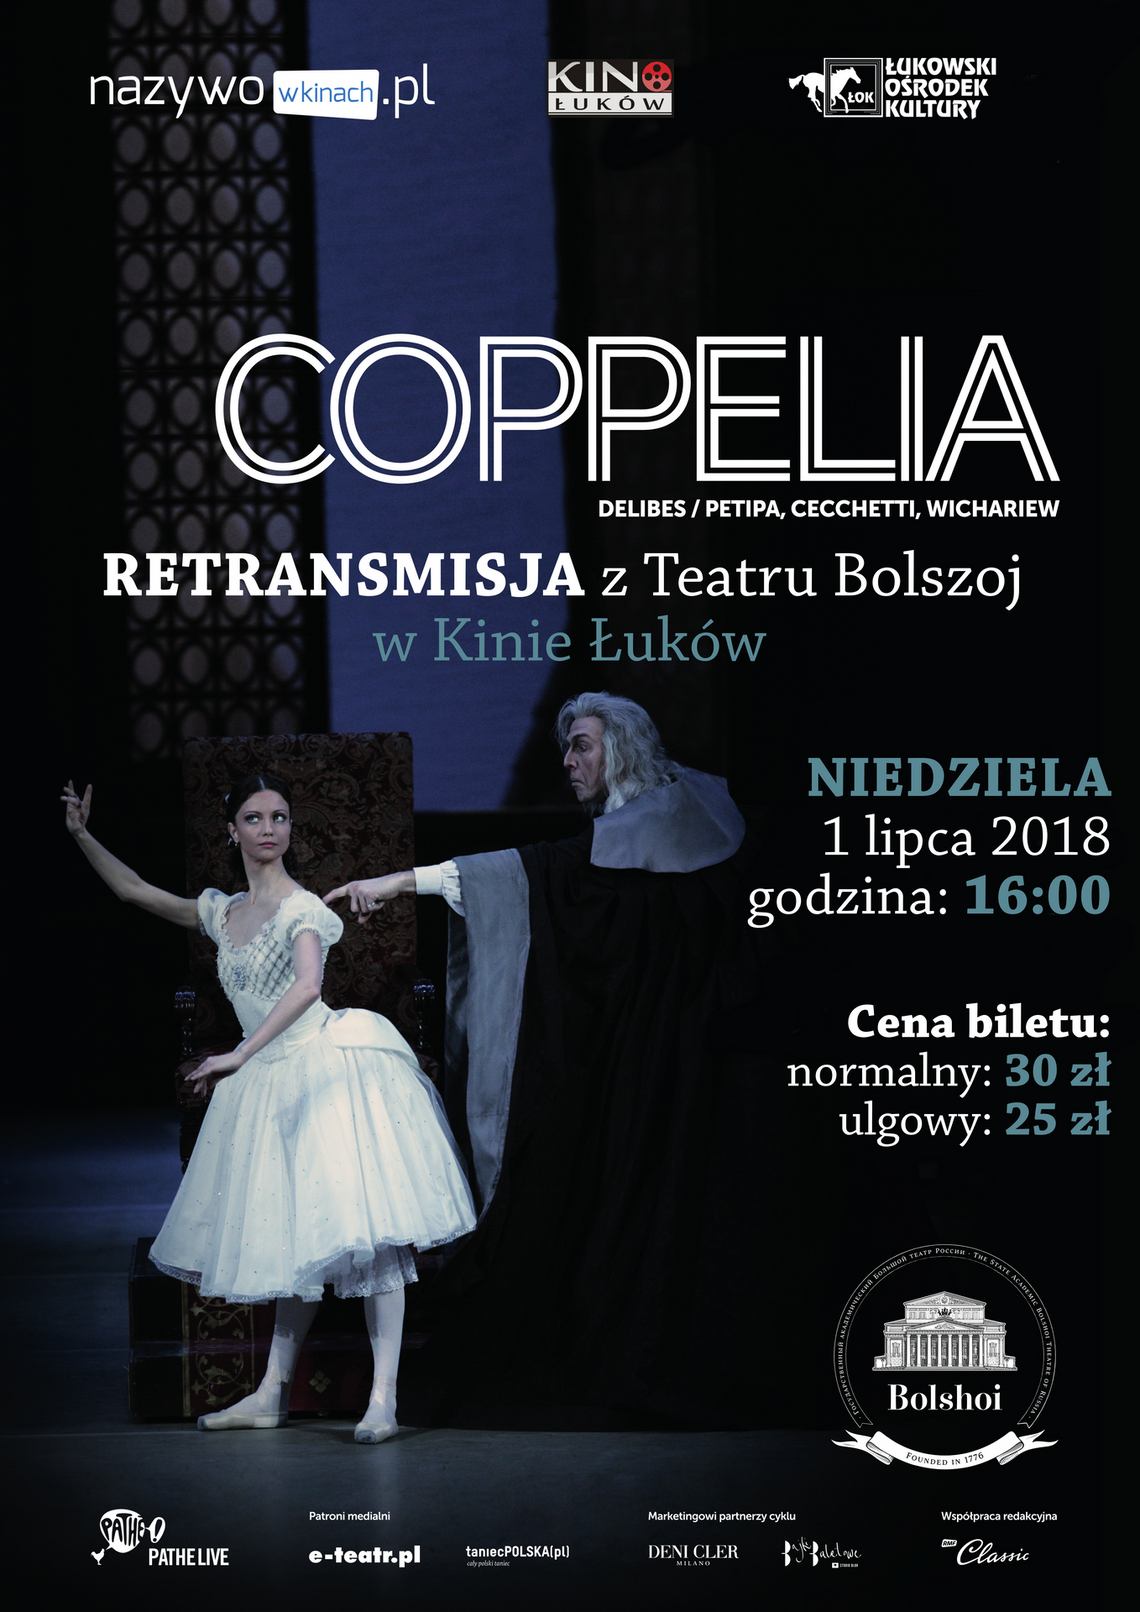 Retransmisja przedstawienia baletowego "Coppelia" z Teatru Bolszoj w Moskwie w Kinie Łuków